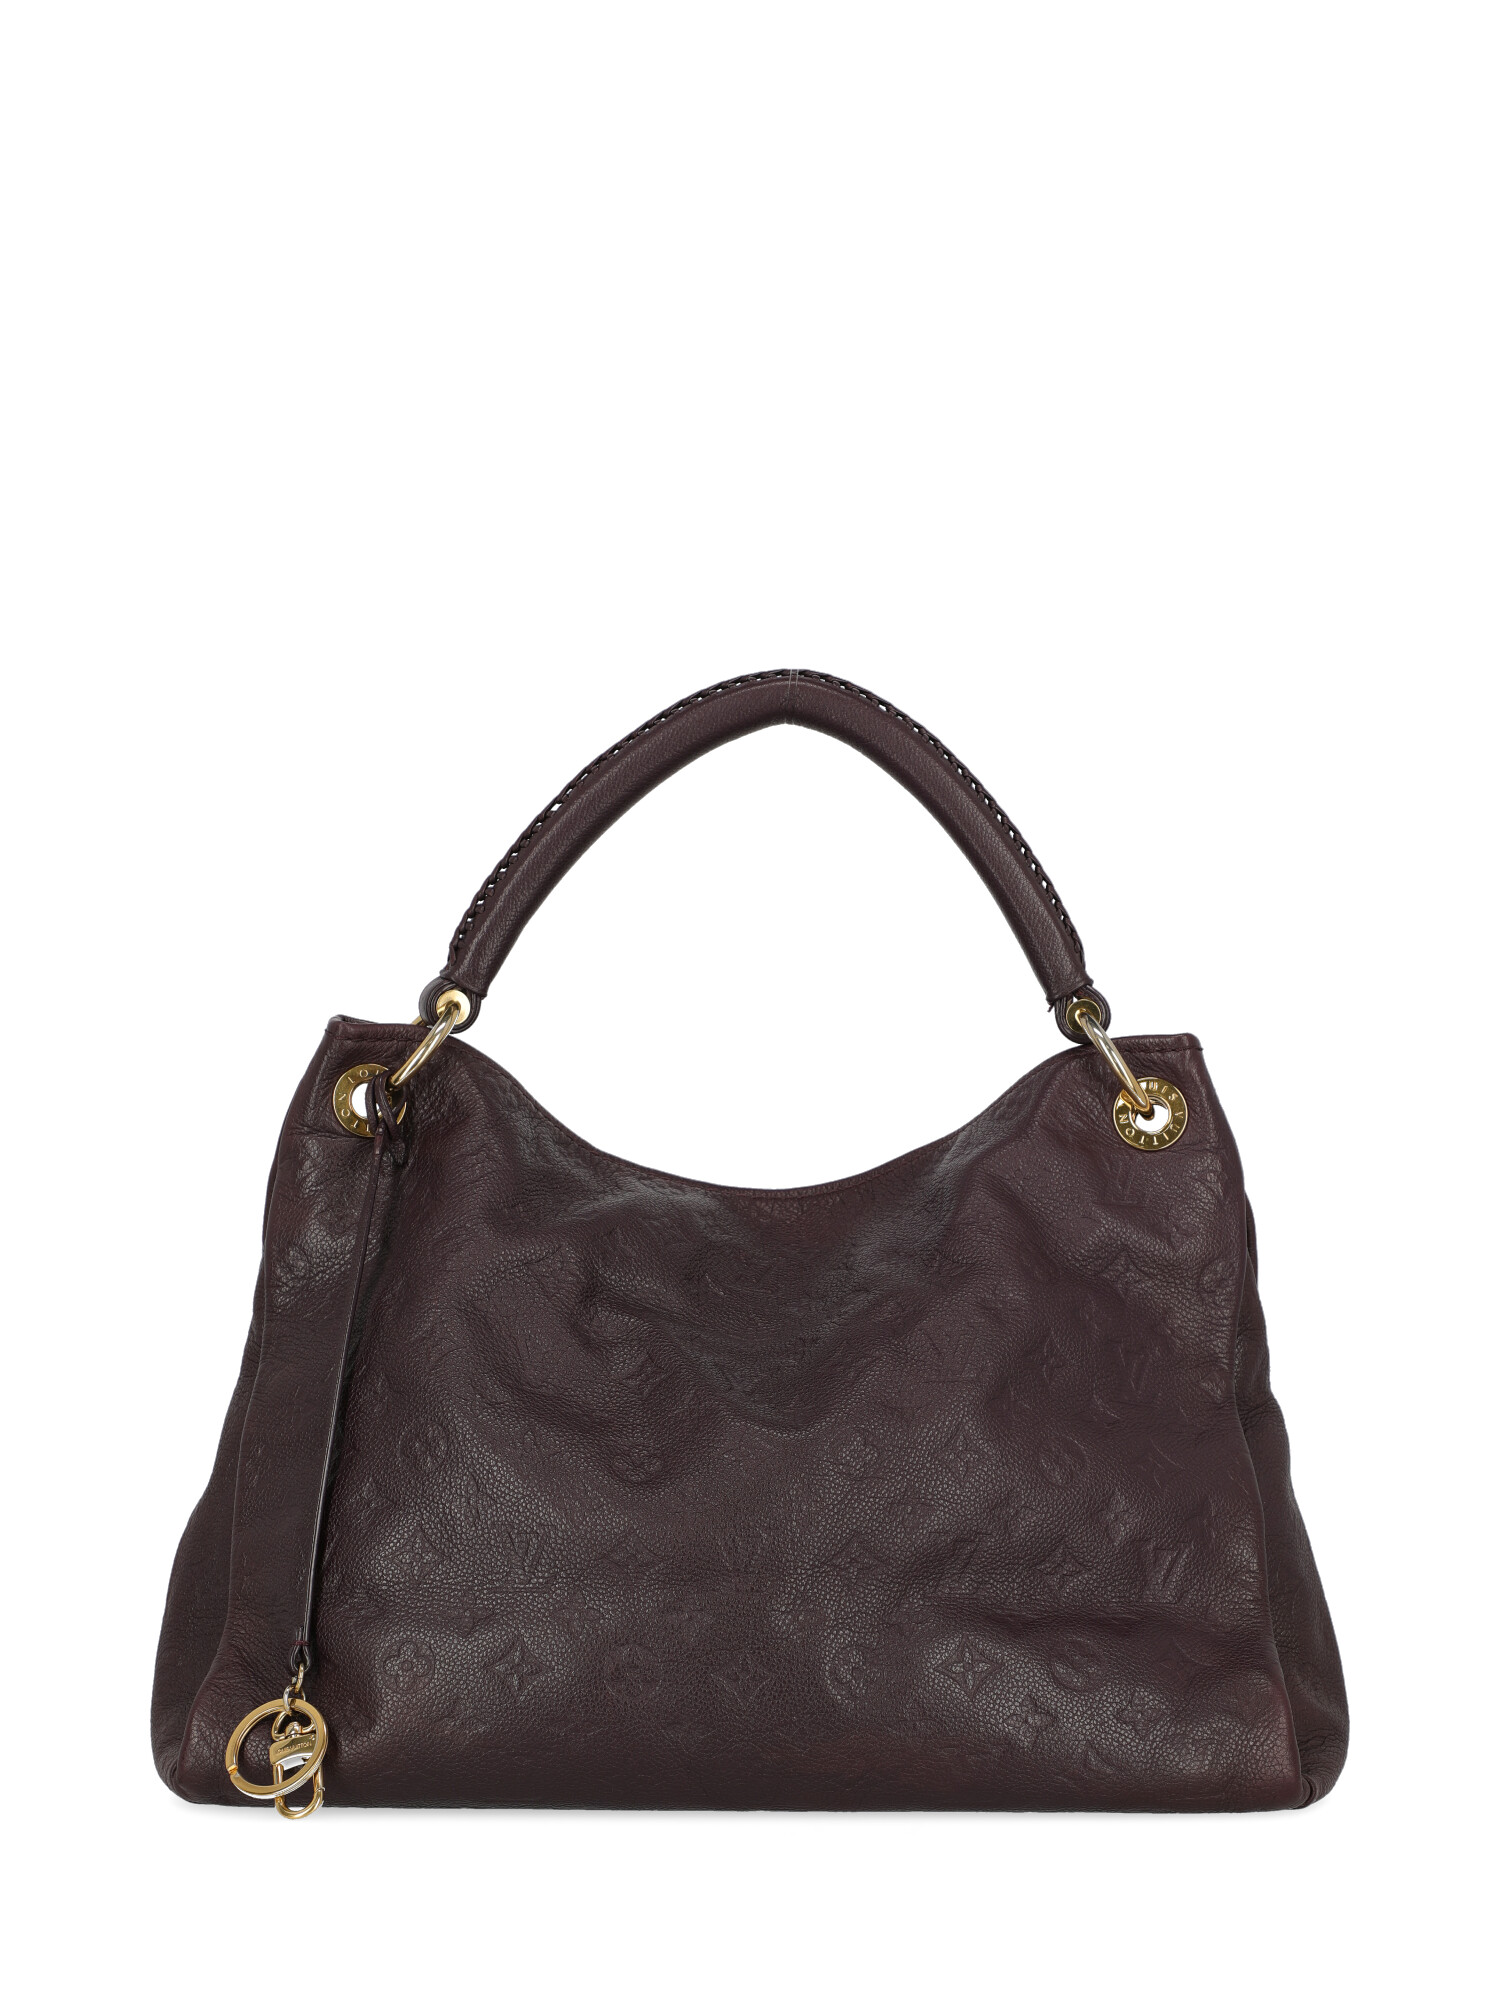 Louis Vuitton Special Price Women Handbags Artsy Purple | eBay